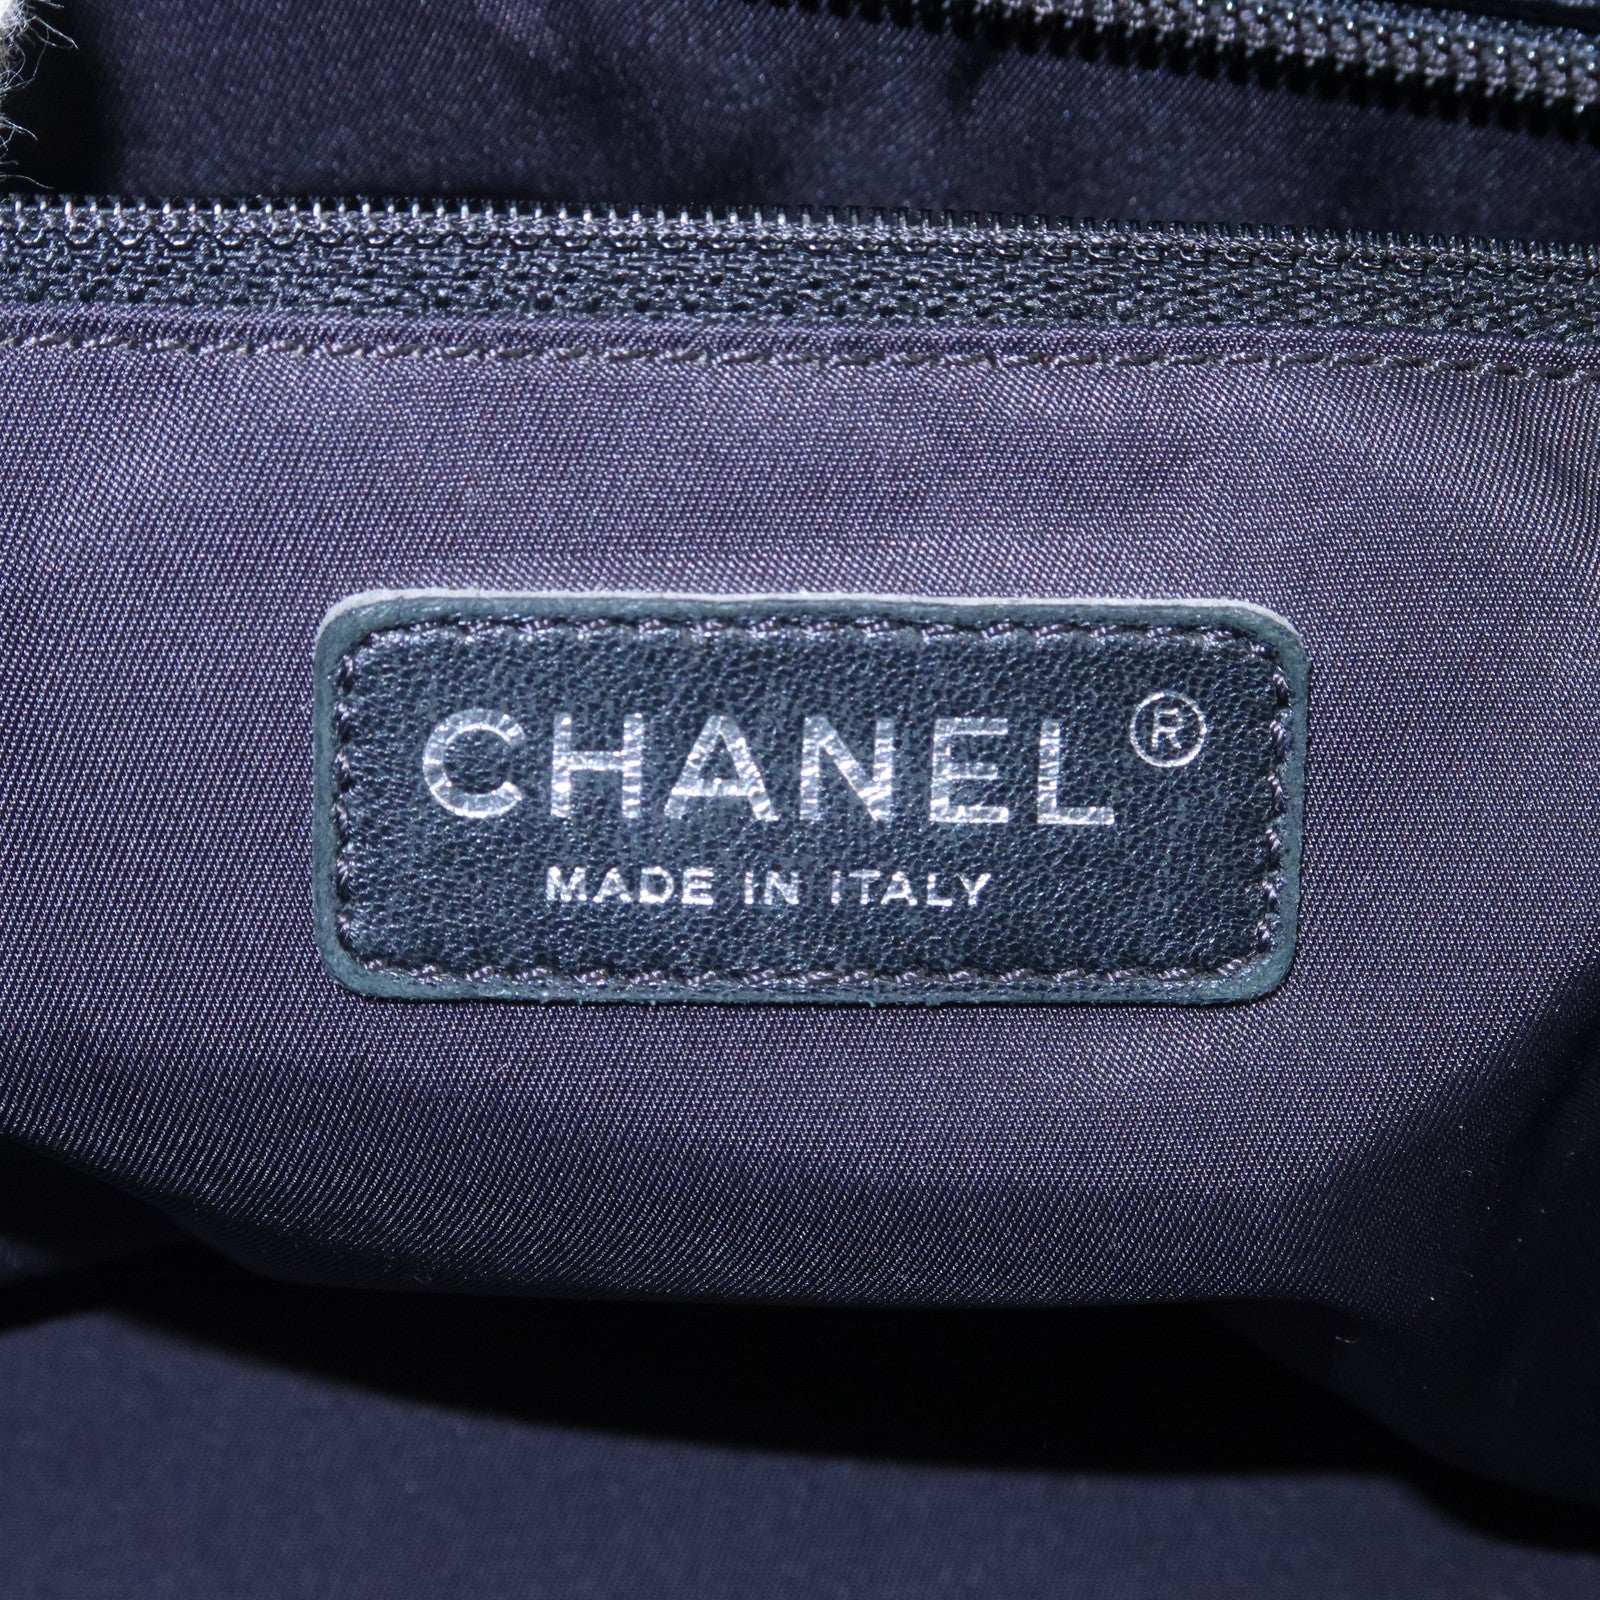 Chanel Metallic Nylon and Leather Paris Biarritz Hobo Bag Chanel